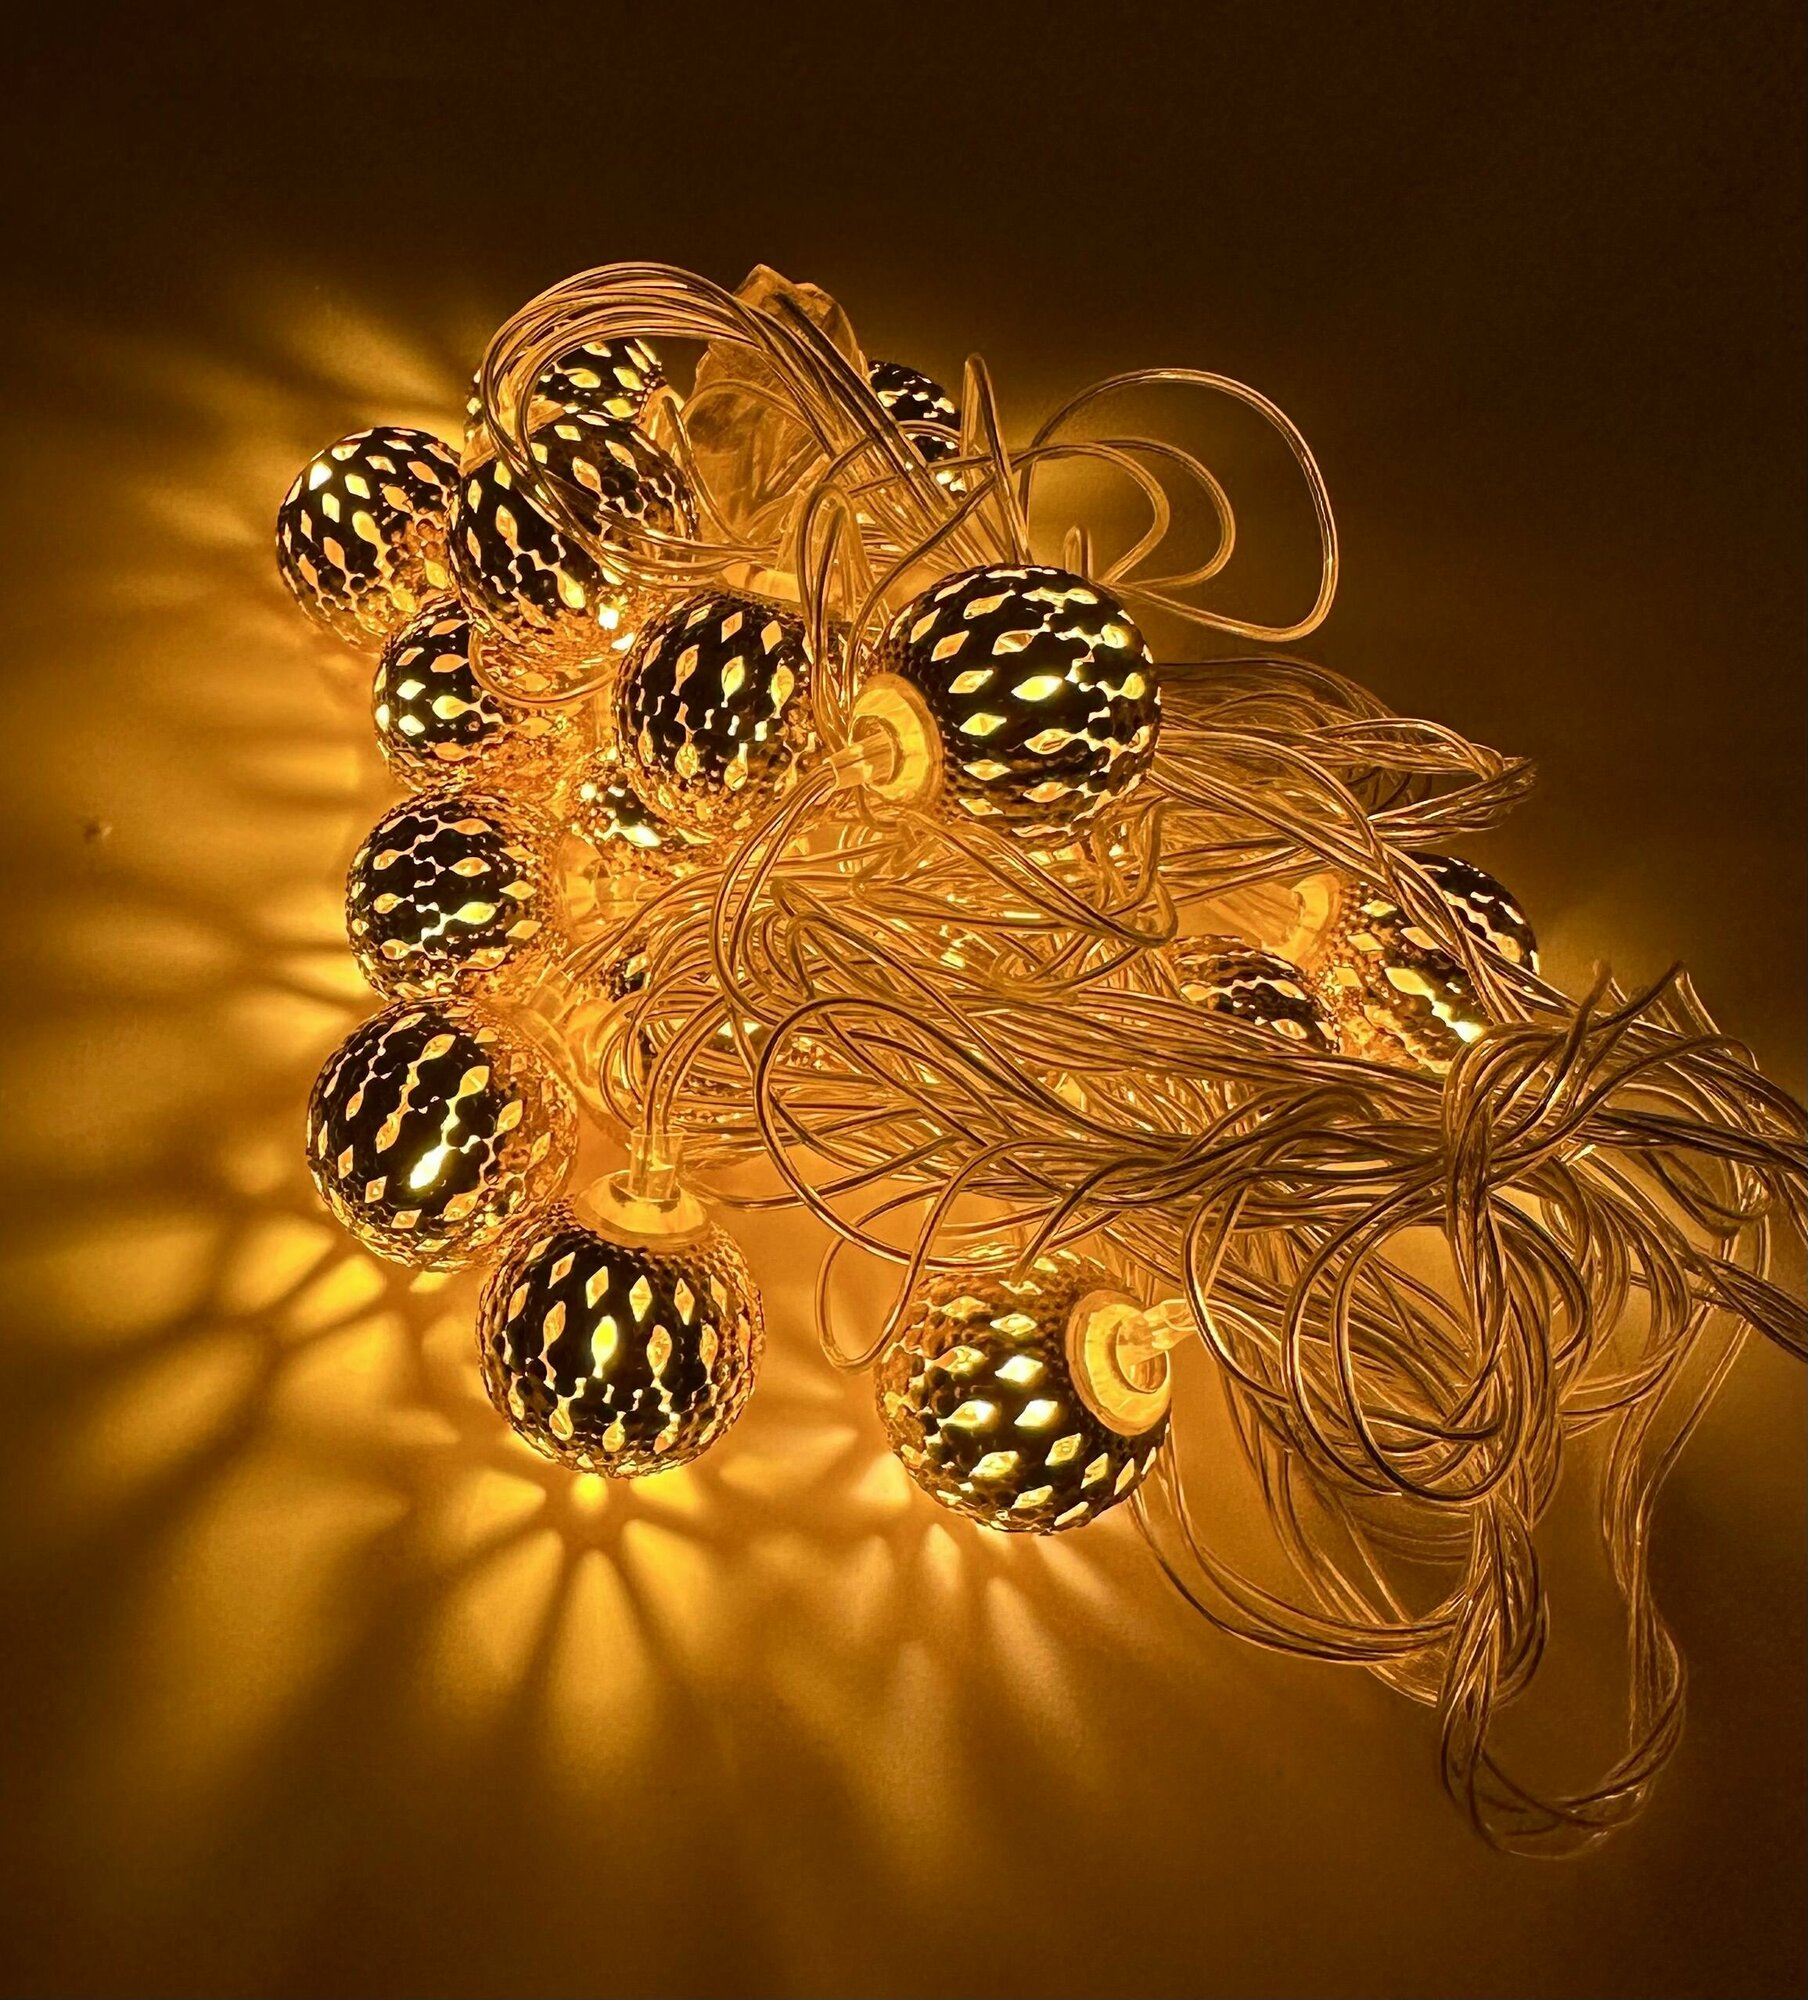 Новогодняя гирлянда "Шарики" на электропитании 6 м (40 лампочек) теплый белый свет